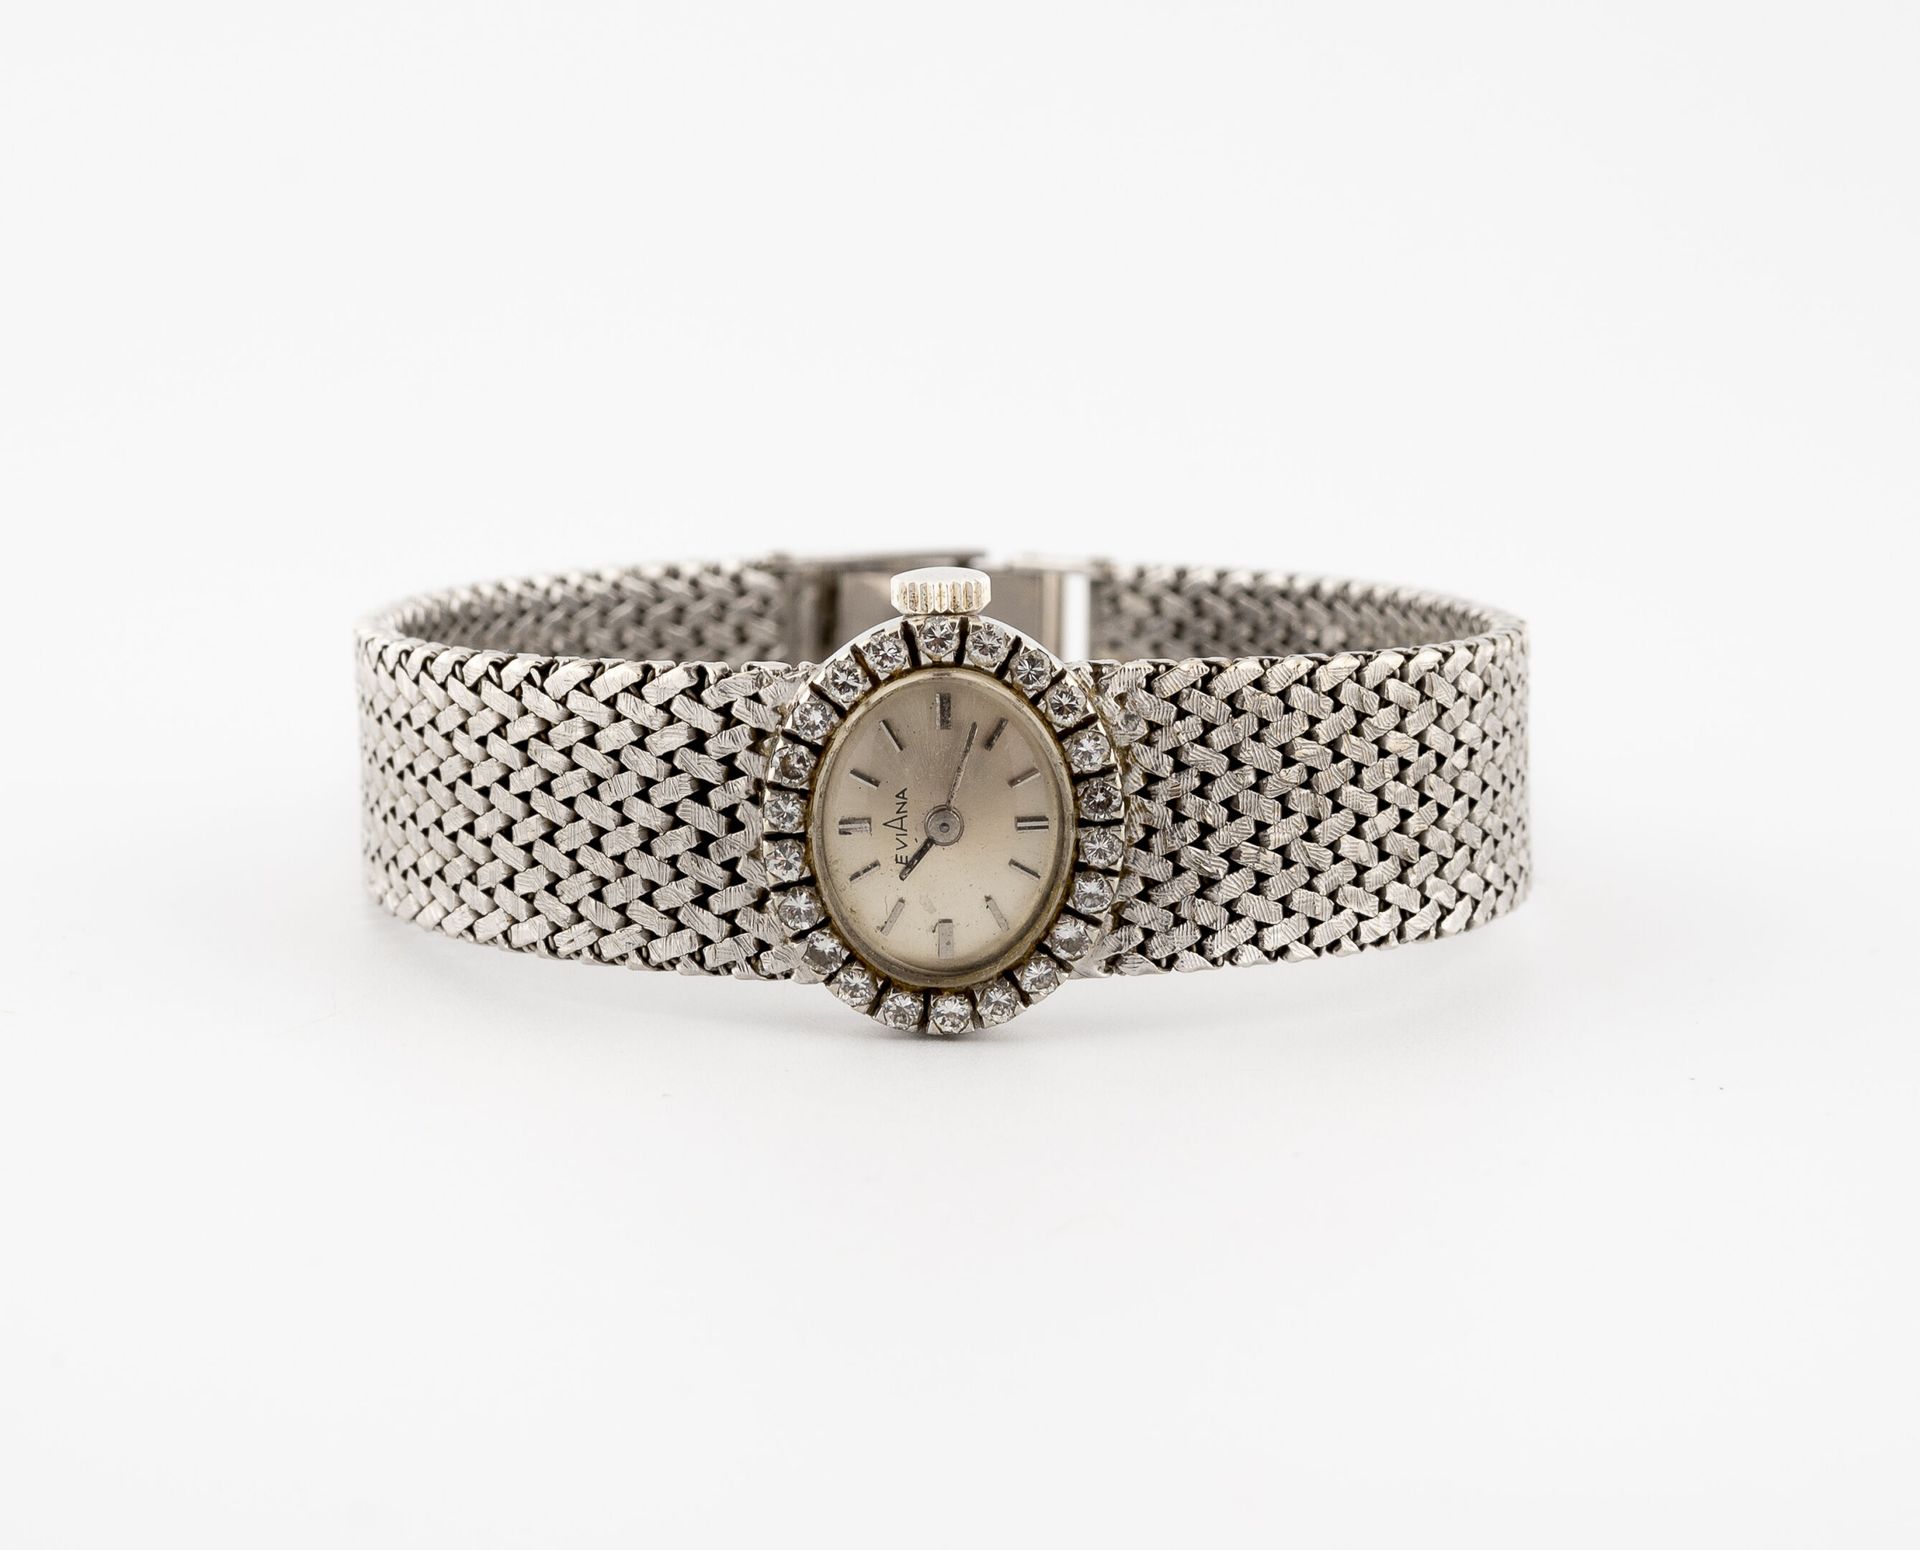 EVIANA Montre bracelet de dame en or gris (750).

Boitier ovale, lunette cernée &hellip;